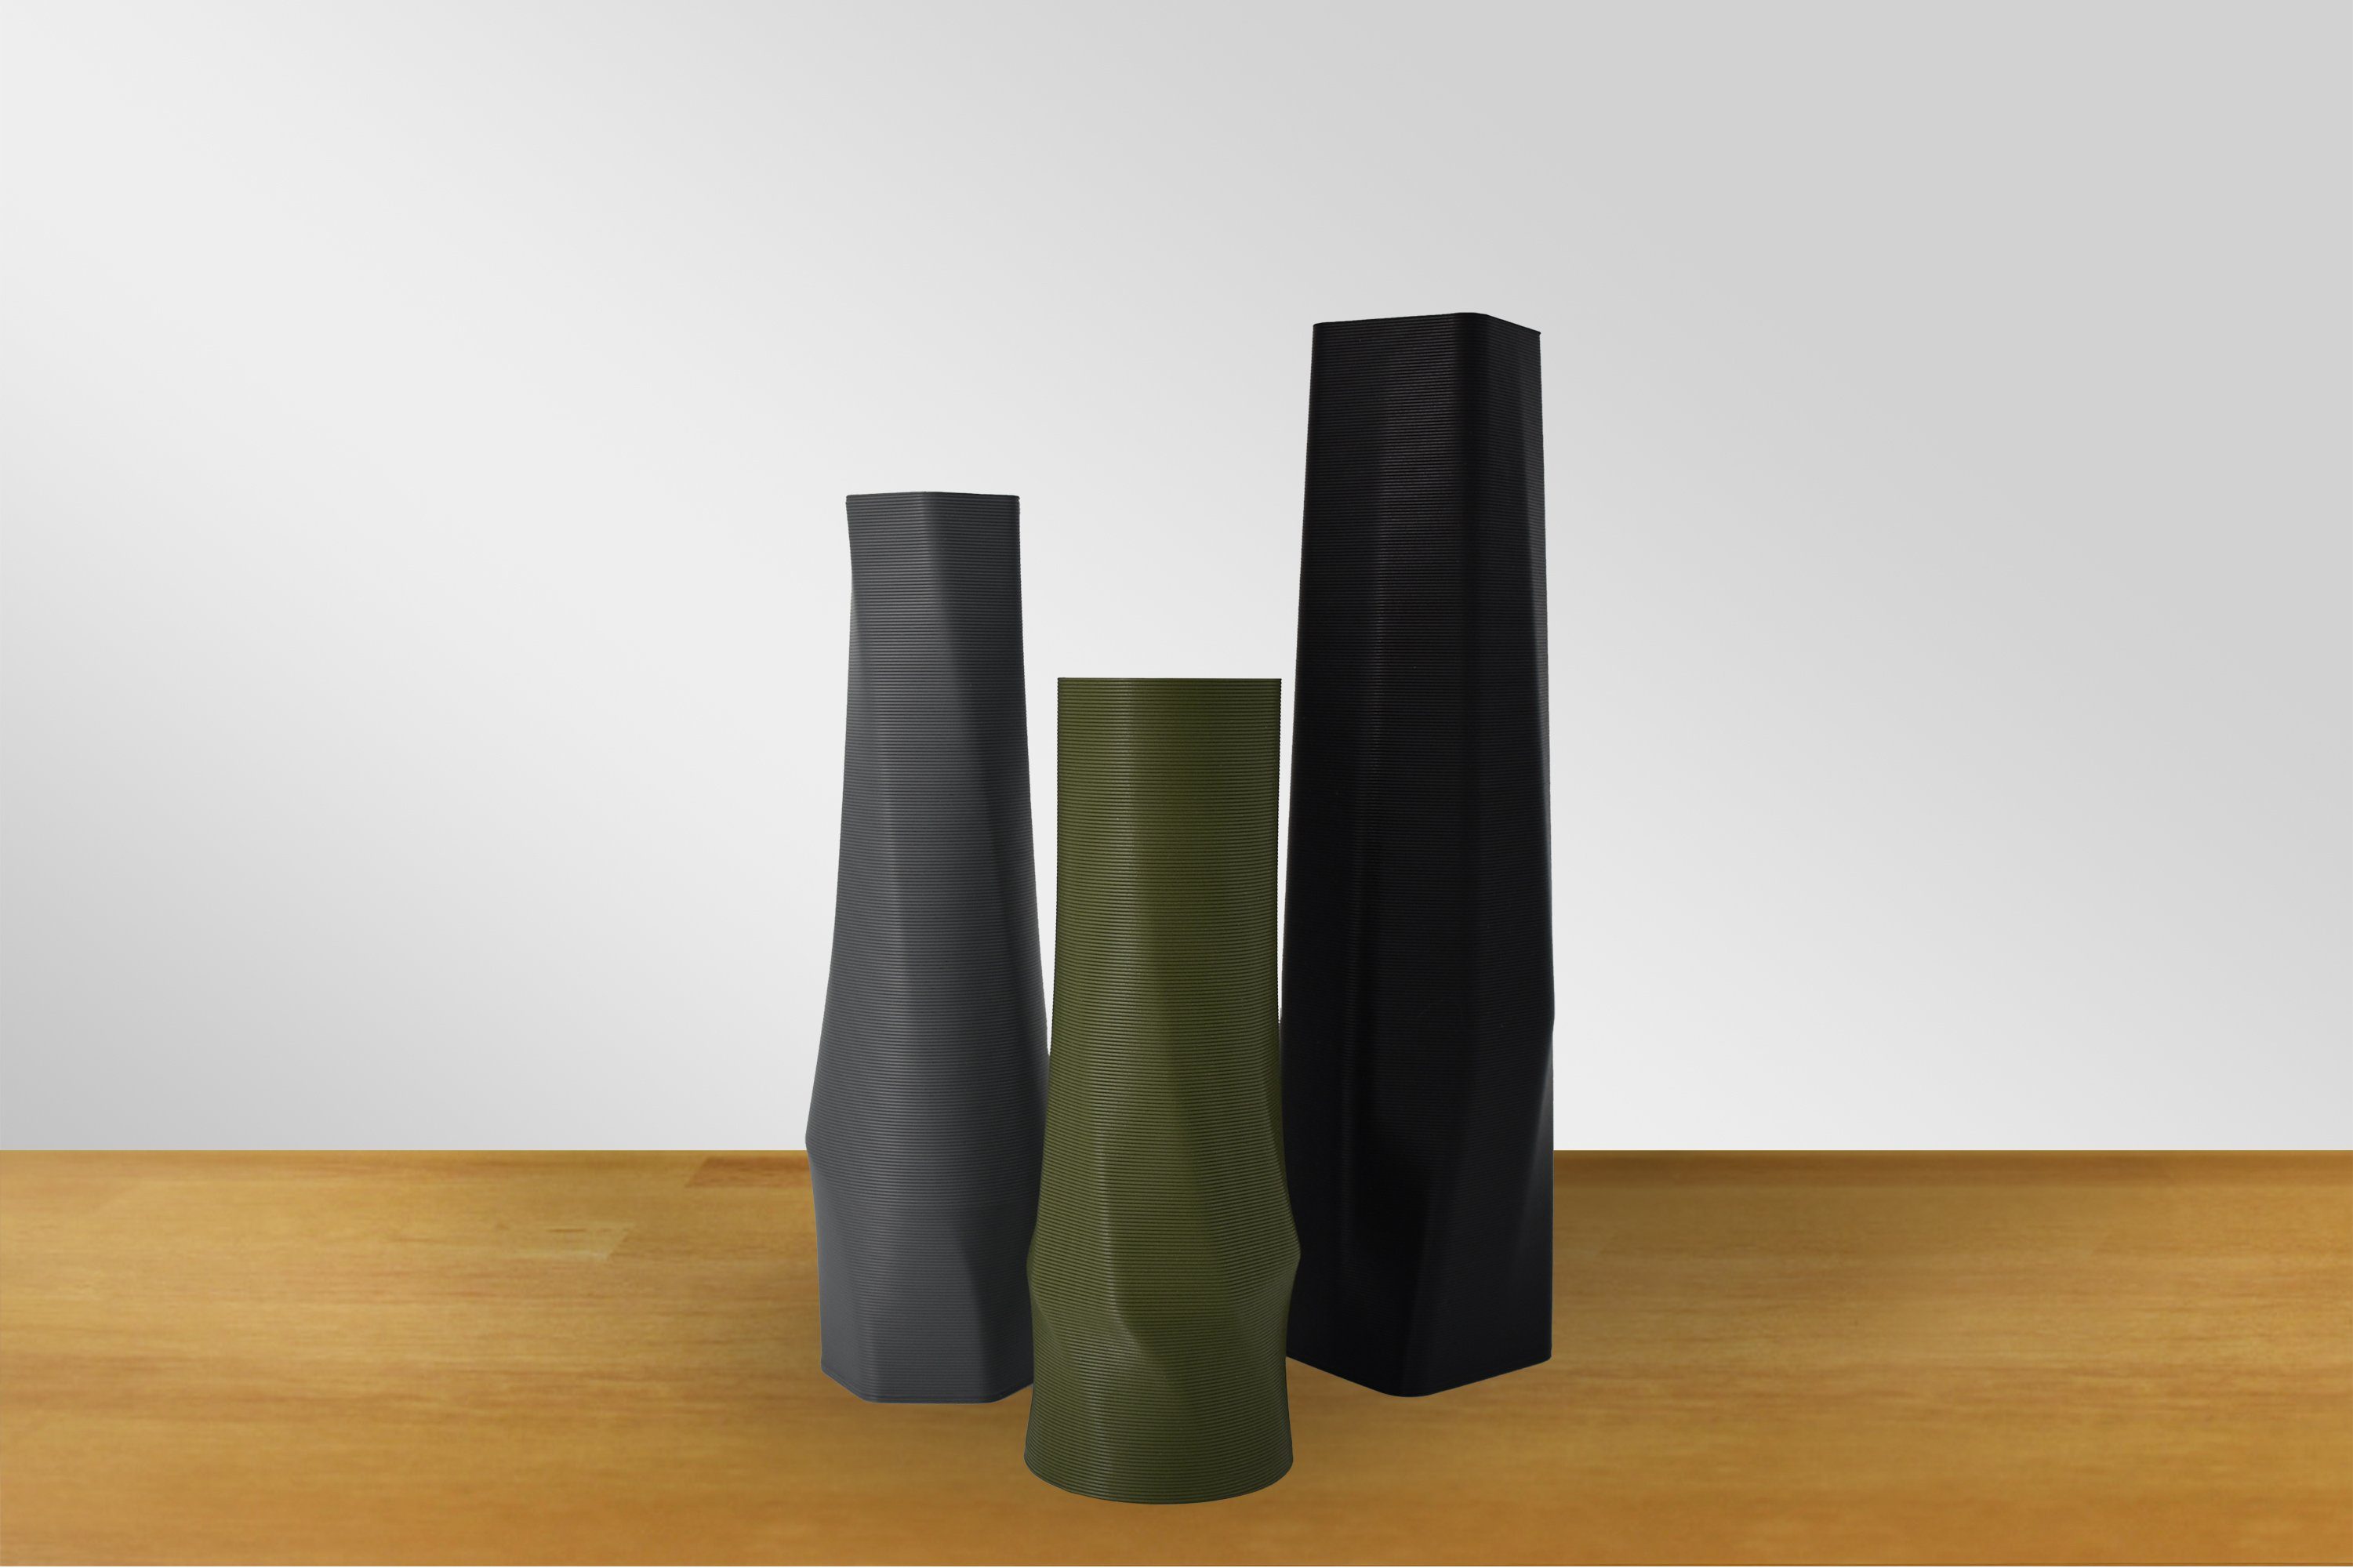 Vasen, Mintgrün Materials 3D-Druck des innerhalb Leichte - Decorations 100% (basic), (Rillung) Vase), 3D Wasserdicht; Struktur (Einzelmodell, Dekovase the vase Farben, square Shapes 1 viele -